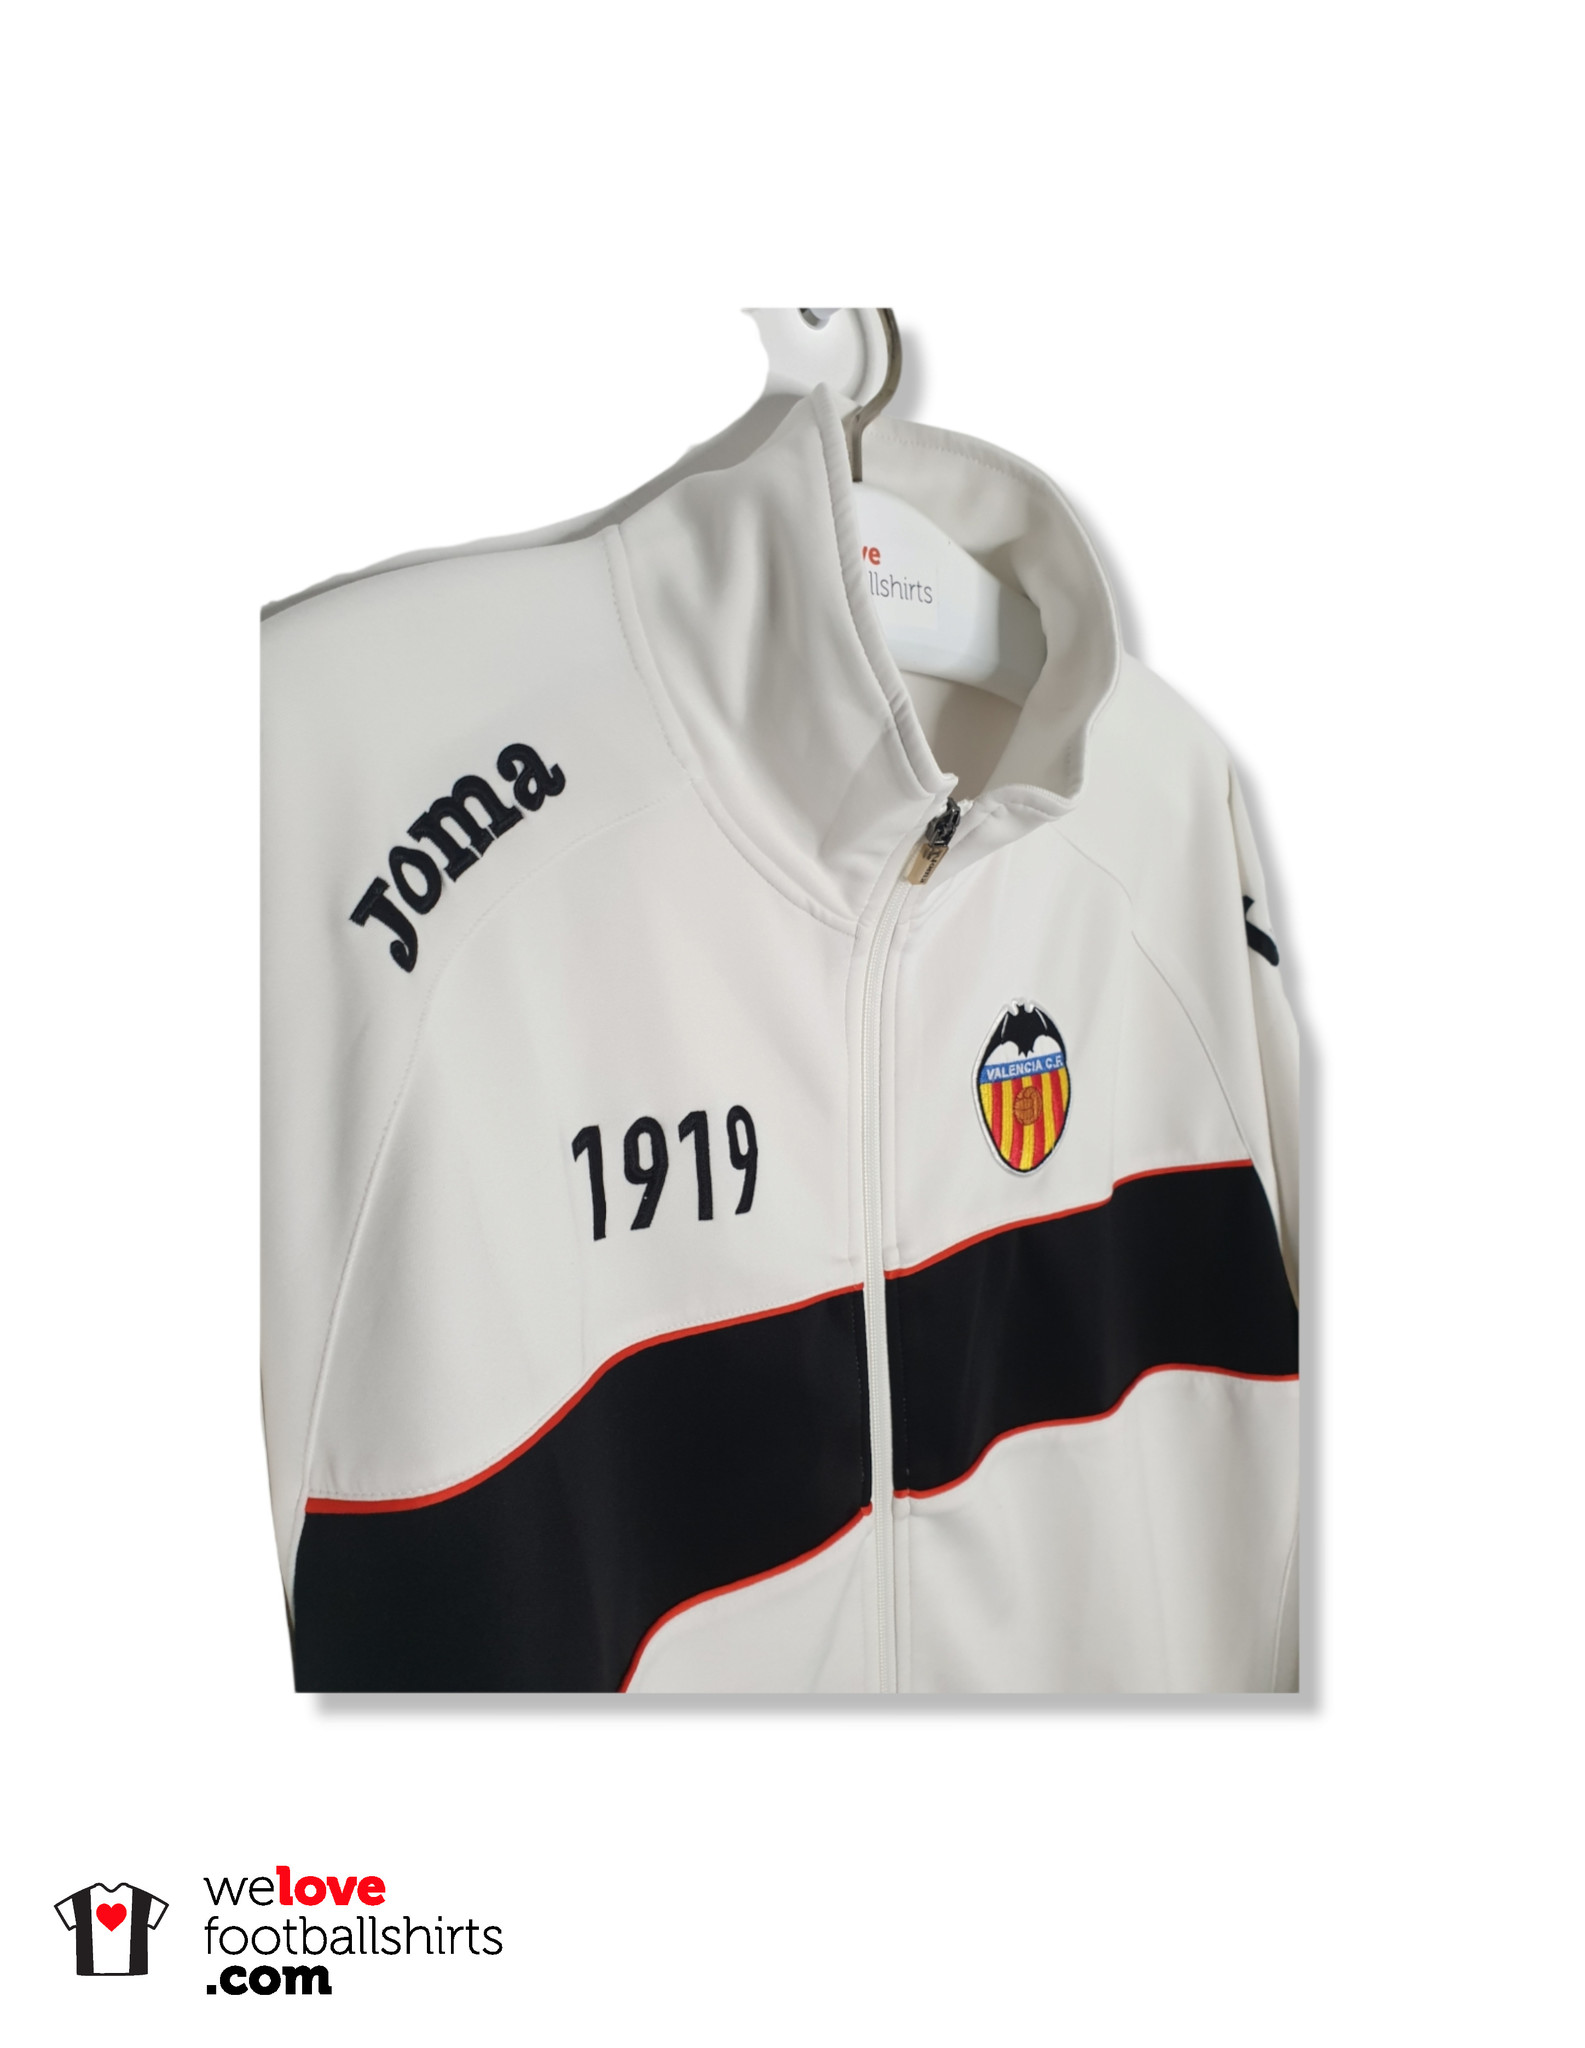 Valencia Football Training Presentation Jacket Sudadera Joma Size Men M